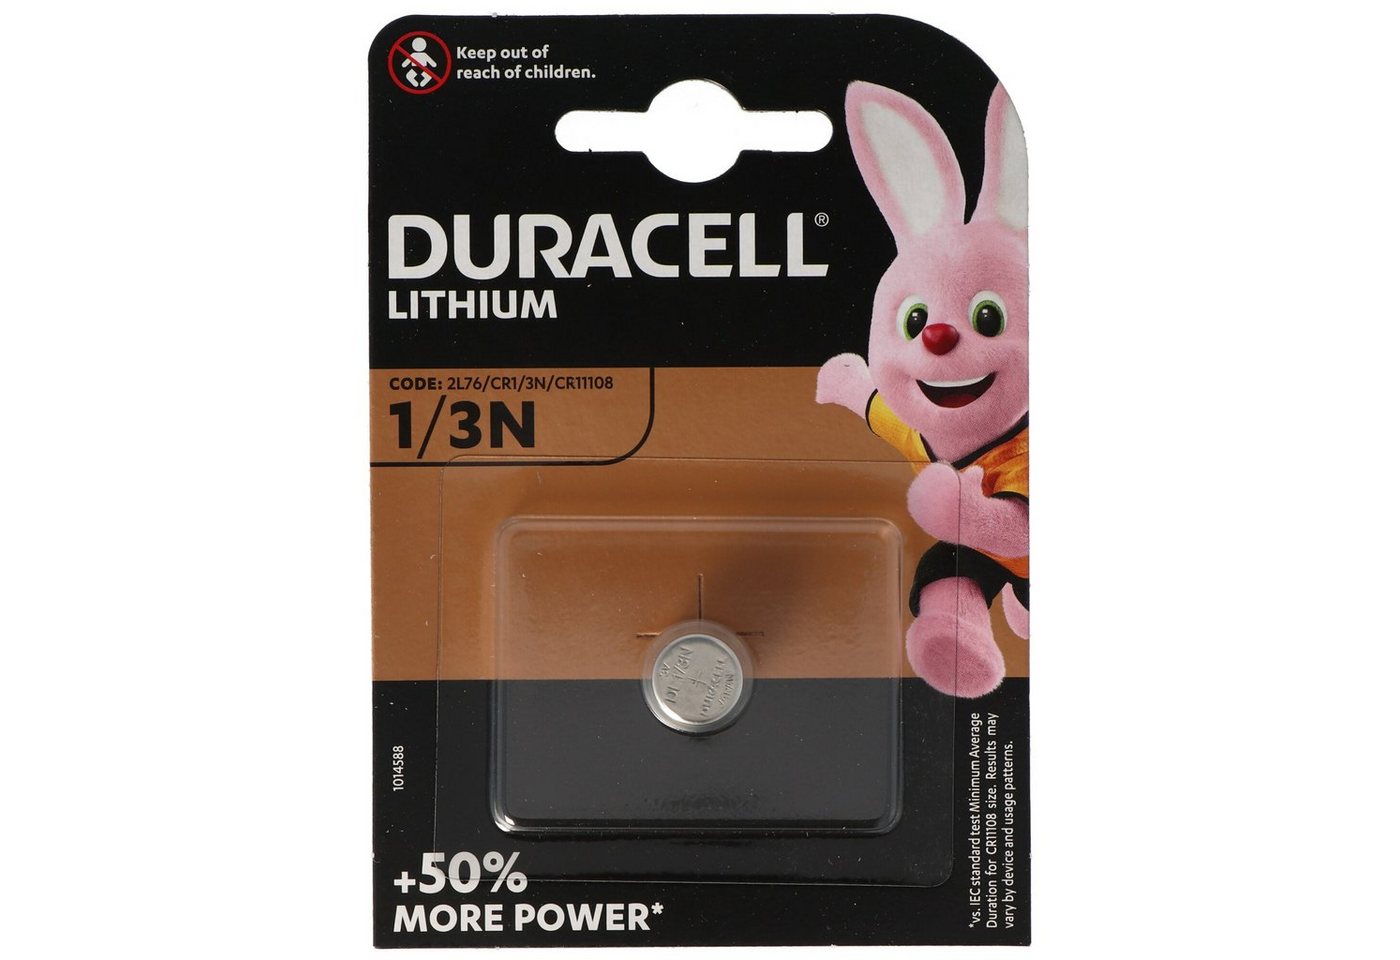 Duracell Duracell DL1/3N Photo Lithium Batterie CR1/3N, 2L76, CR-1/3 N, CR1110 Batterie, (3,0 V) von Duracell